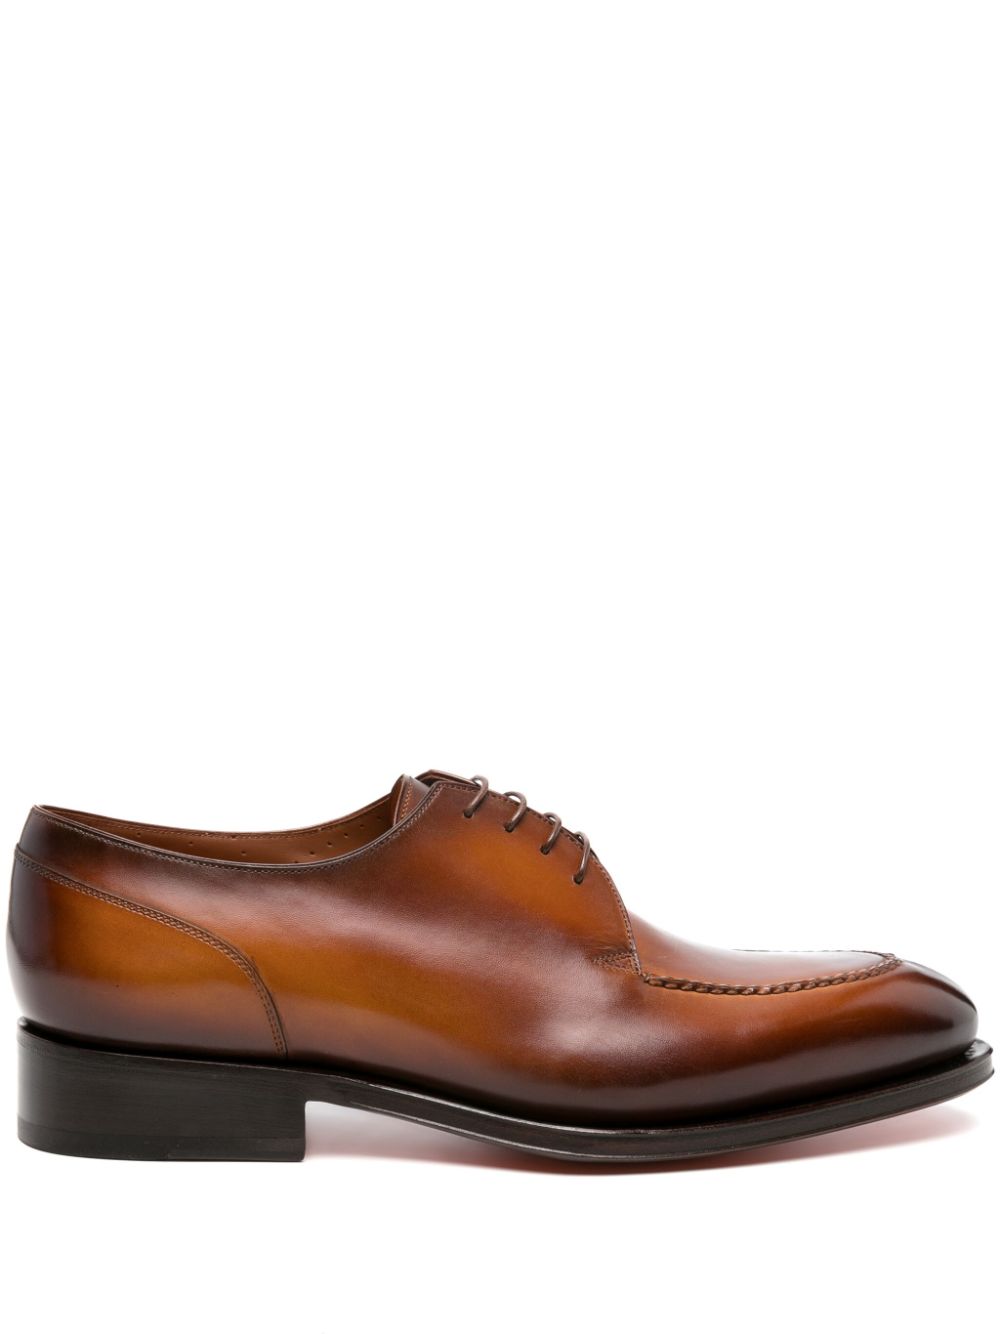 Santoni leather derby shoes - Brown von Santoni